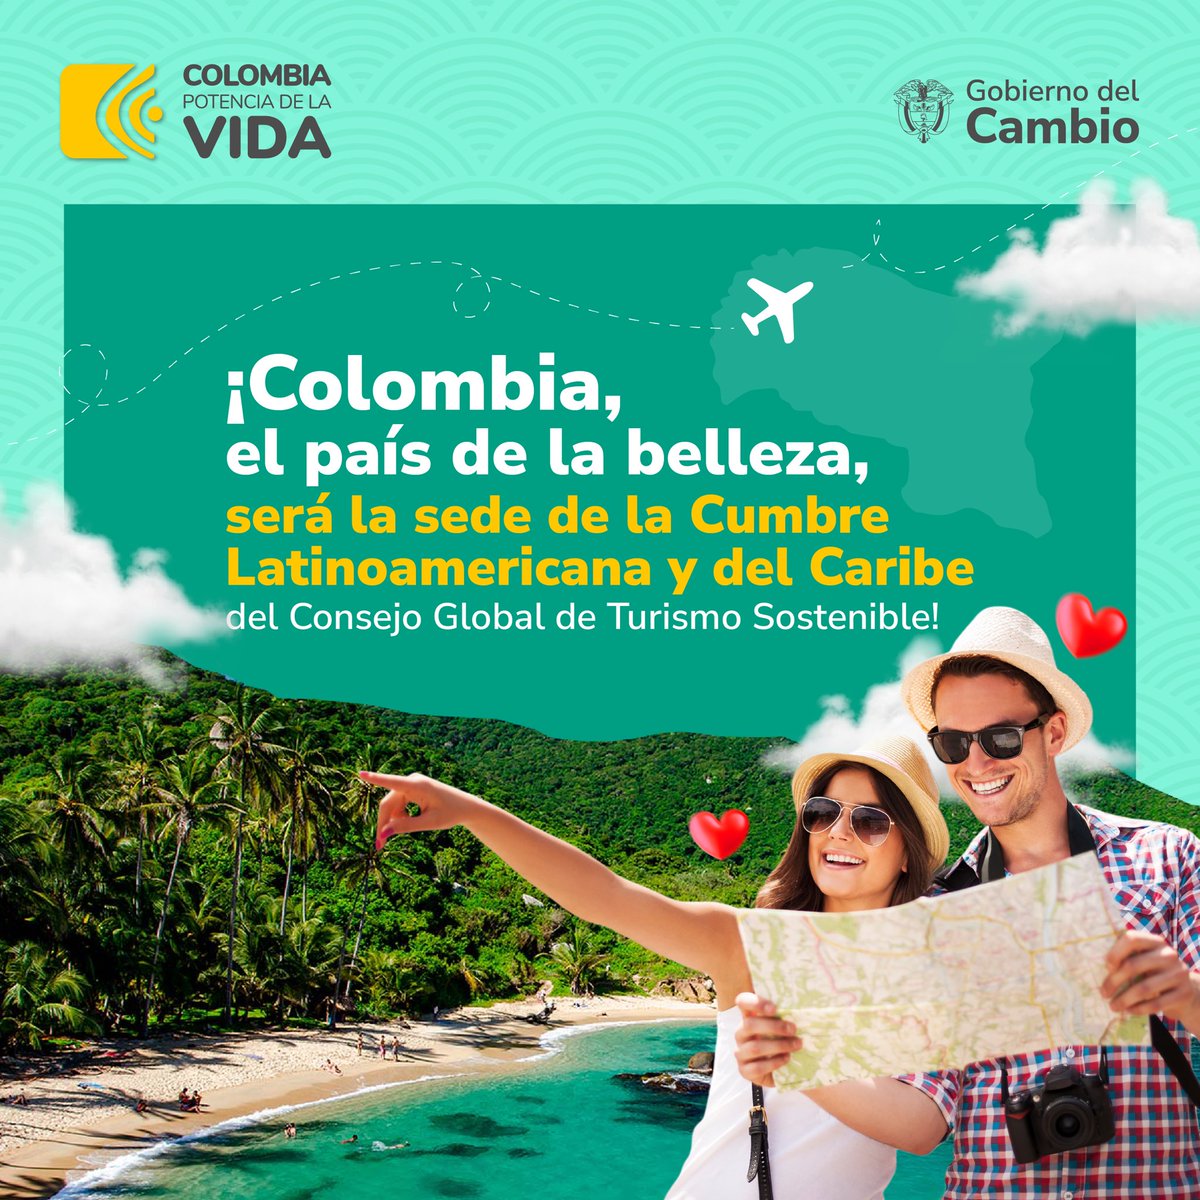 🤩 Colombia, el País de la Belleza, será el epicentro de la reunión más importante de Latinoamérica y el Caribe en turismo sostenible. En este espacio se buscará promover la sostenibilidad en el sector y concertar un plan de trabajo para consolidar a la región como líder en el